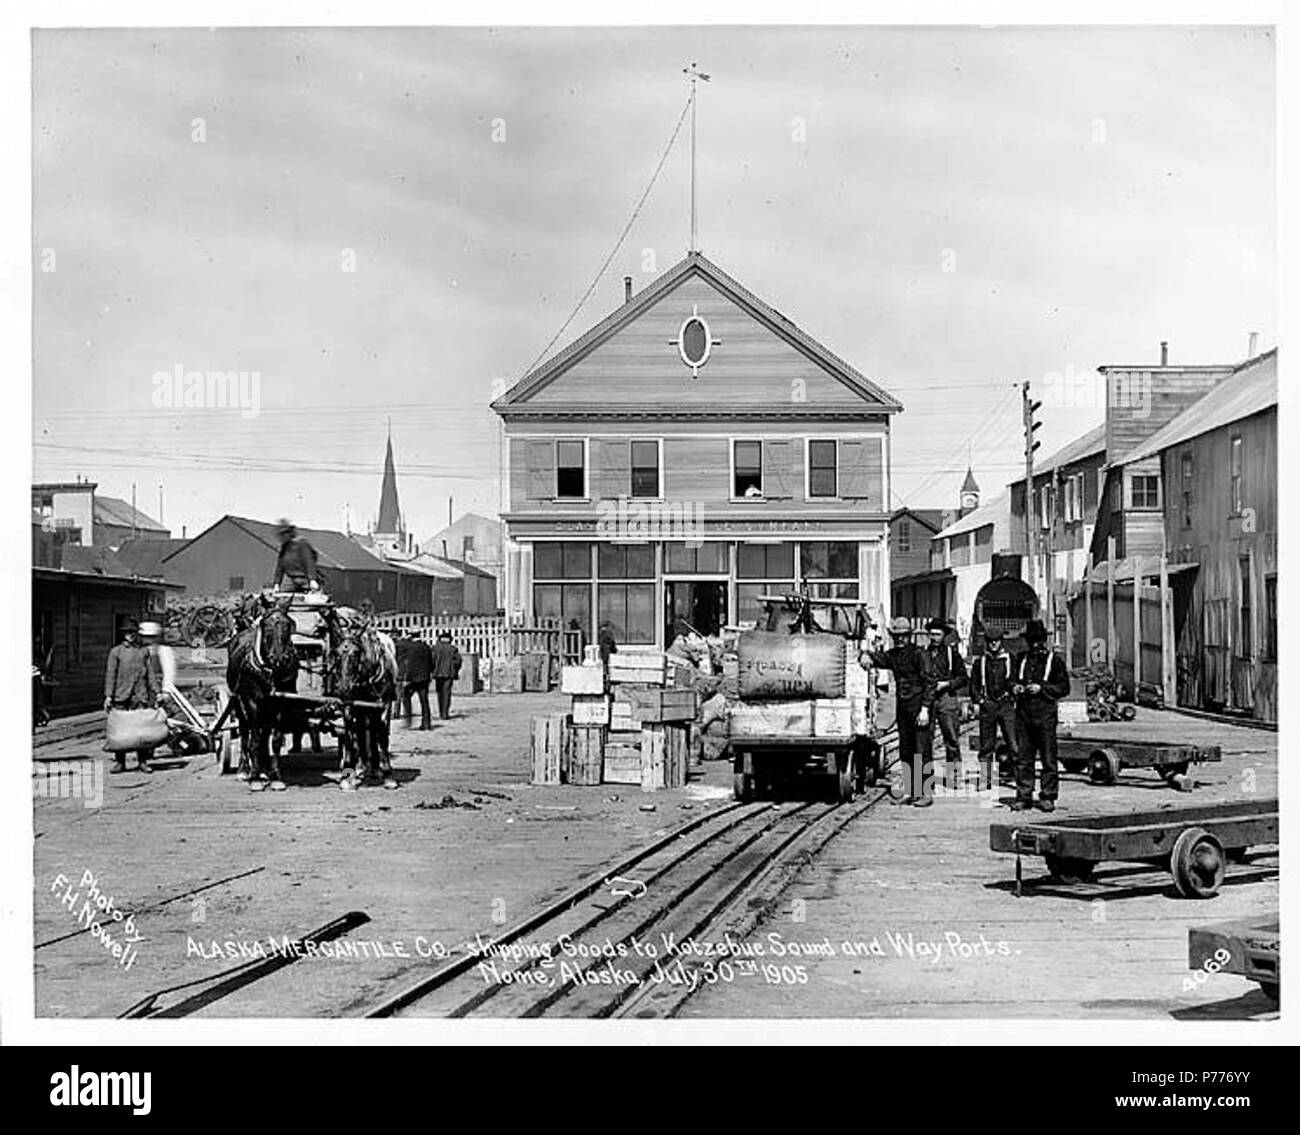 . Inglese: Freighting operazioni dell'Alaska Mercantile Co. mostra cavallo di carro e tram auto, Nome, luglio 1905 . Inglese: didascalia sull'immagine: Alaska Mercantile Co., spedizione merci ai Kotzebue Sound e modo di porte. Nome, Alaska, 30 luglio 1905. Foto di F.H. Nowell, 4069. Soggetti (LCTGM): i negozi & Negozi -- Alaska--Nome; Freight & noli--Alaska--Nome; carrelli e carri--Alaska--Nome; cavalli--Alaska--Nome soggetti (LCSH): Alaska compagnia mercantile . 1905 5 Freighting operazioni dell'Alaska Mercantile Co mostra cavallo di carro e tram auto, Nome, luglio 1905 (NOWELL 123) Foto Stock